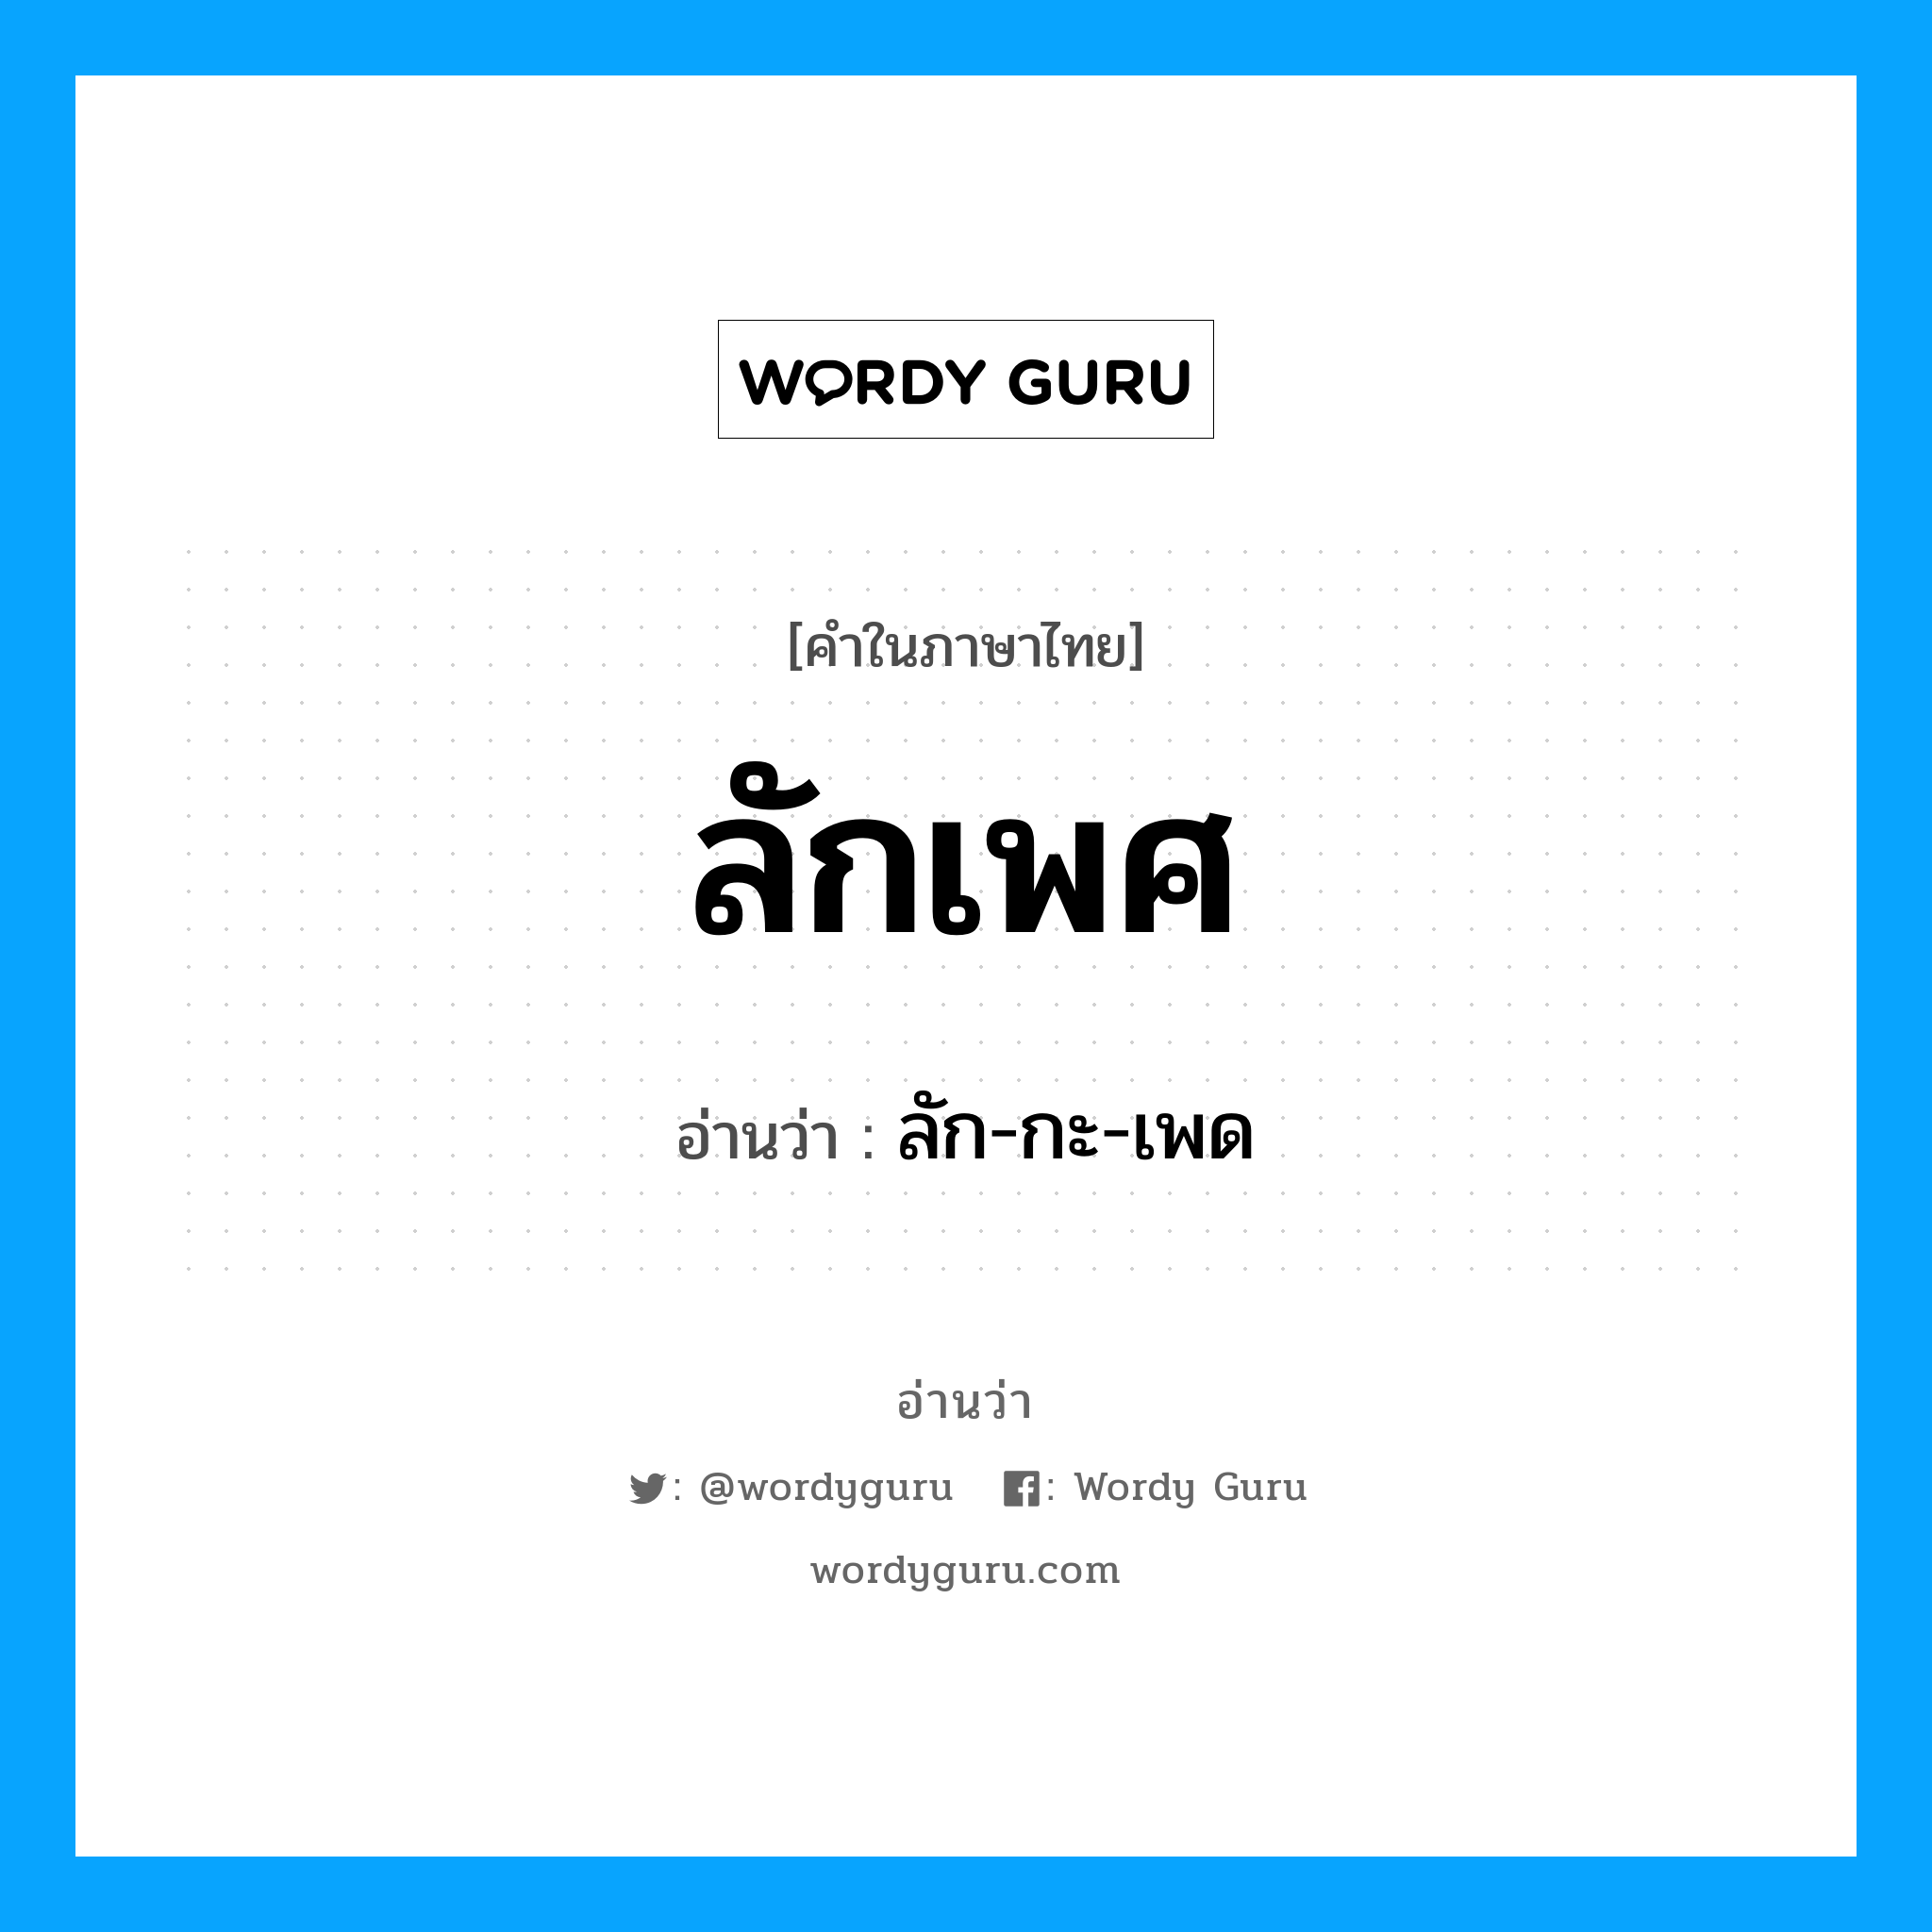 ลัก-กะ-เพด เป็นคำอ่านของคำไหน?, คำในภาษาไทย ลัก-กะ-เพด อ่านว่า ลักเพศ